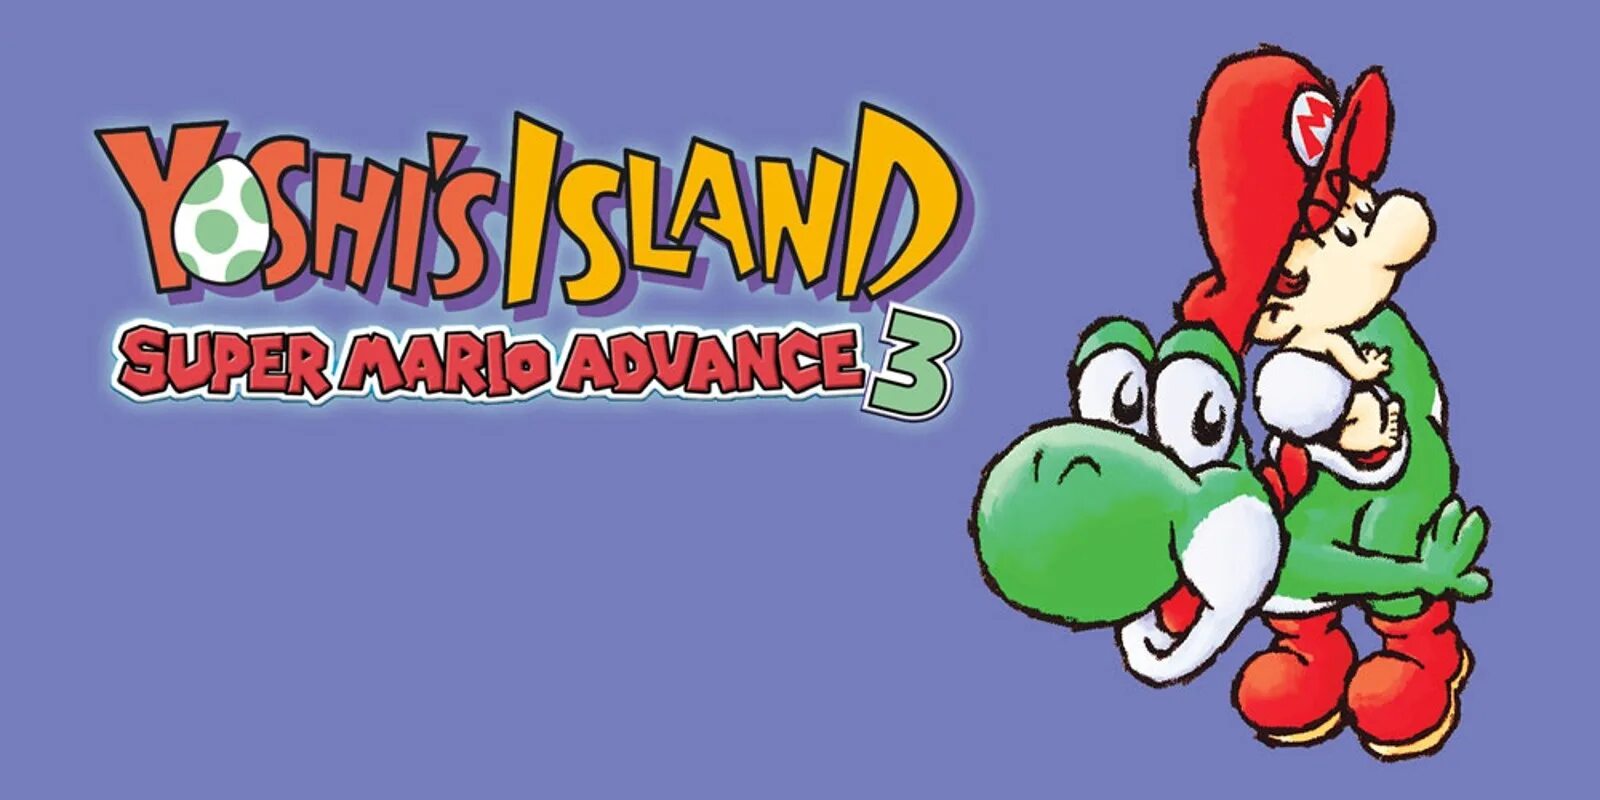 Mario yoshi island. Super Mario Advance 3 Yoshi's Island. Yoshi Island GBA. Yoshi's Island GBA. Super Mario Yoshi.